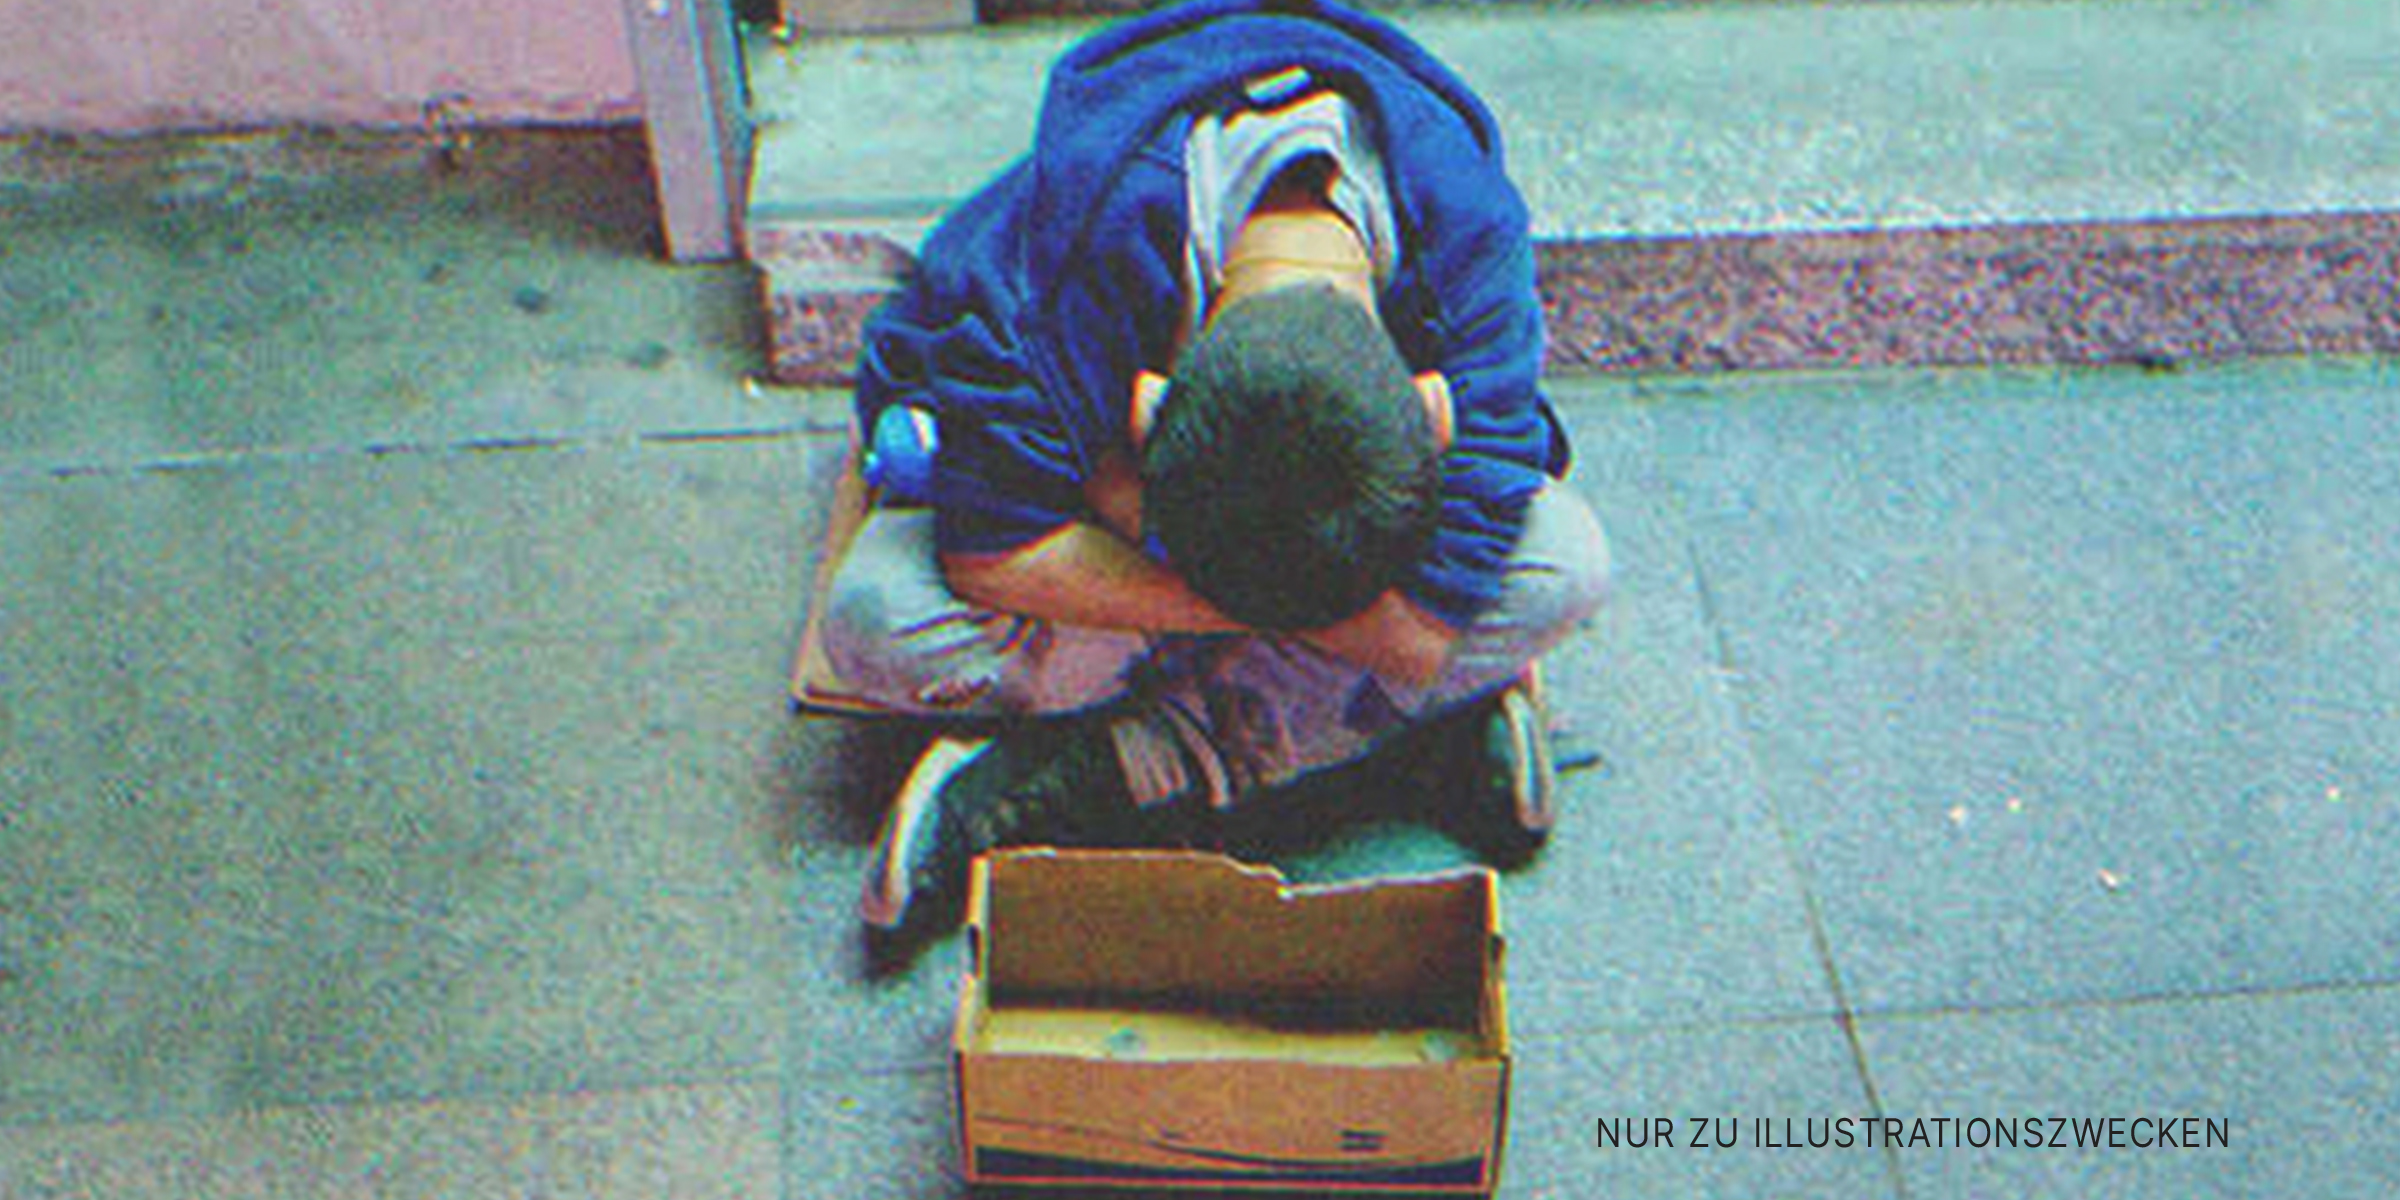 Junge sitzt auf dem Boden | Quelle: Imagebb